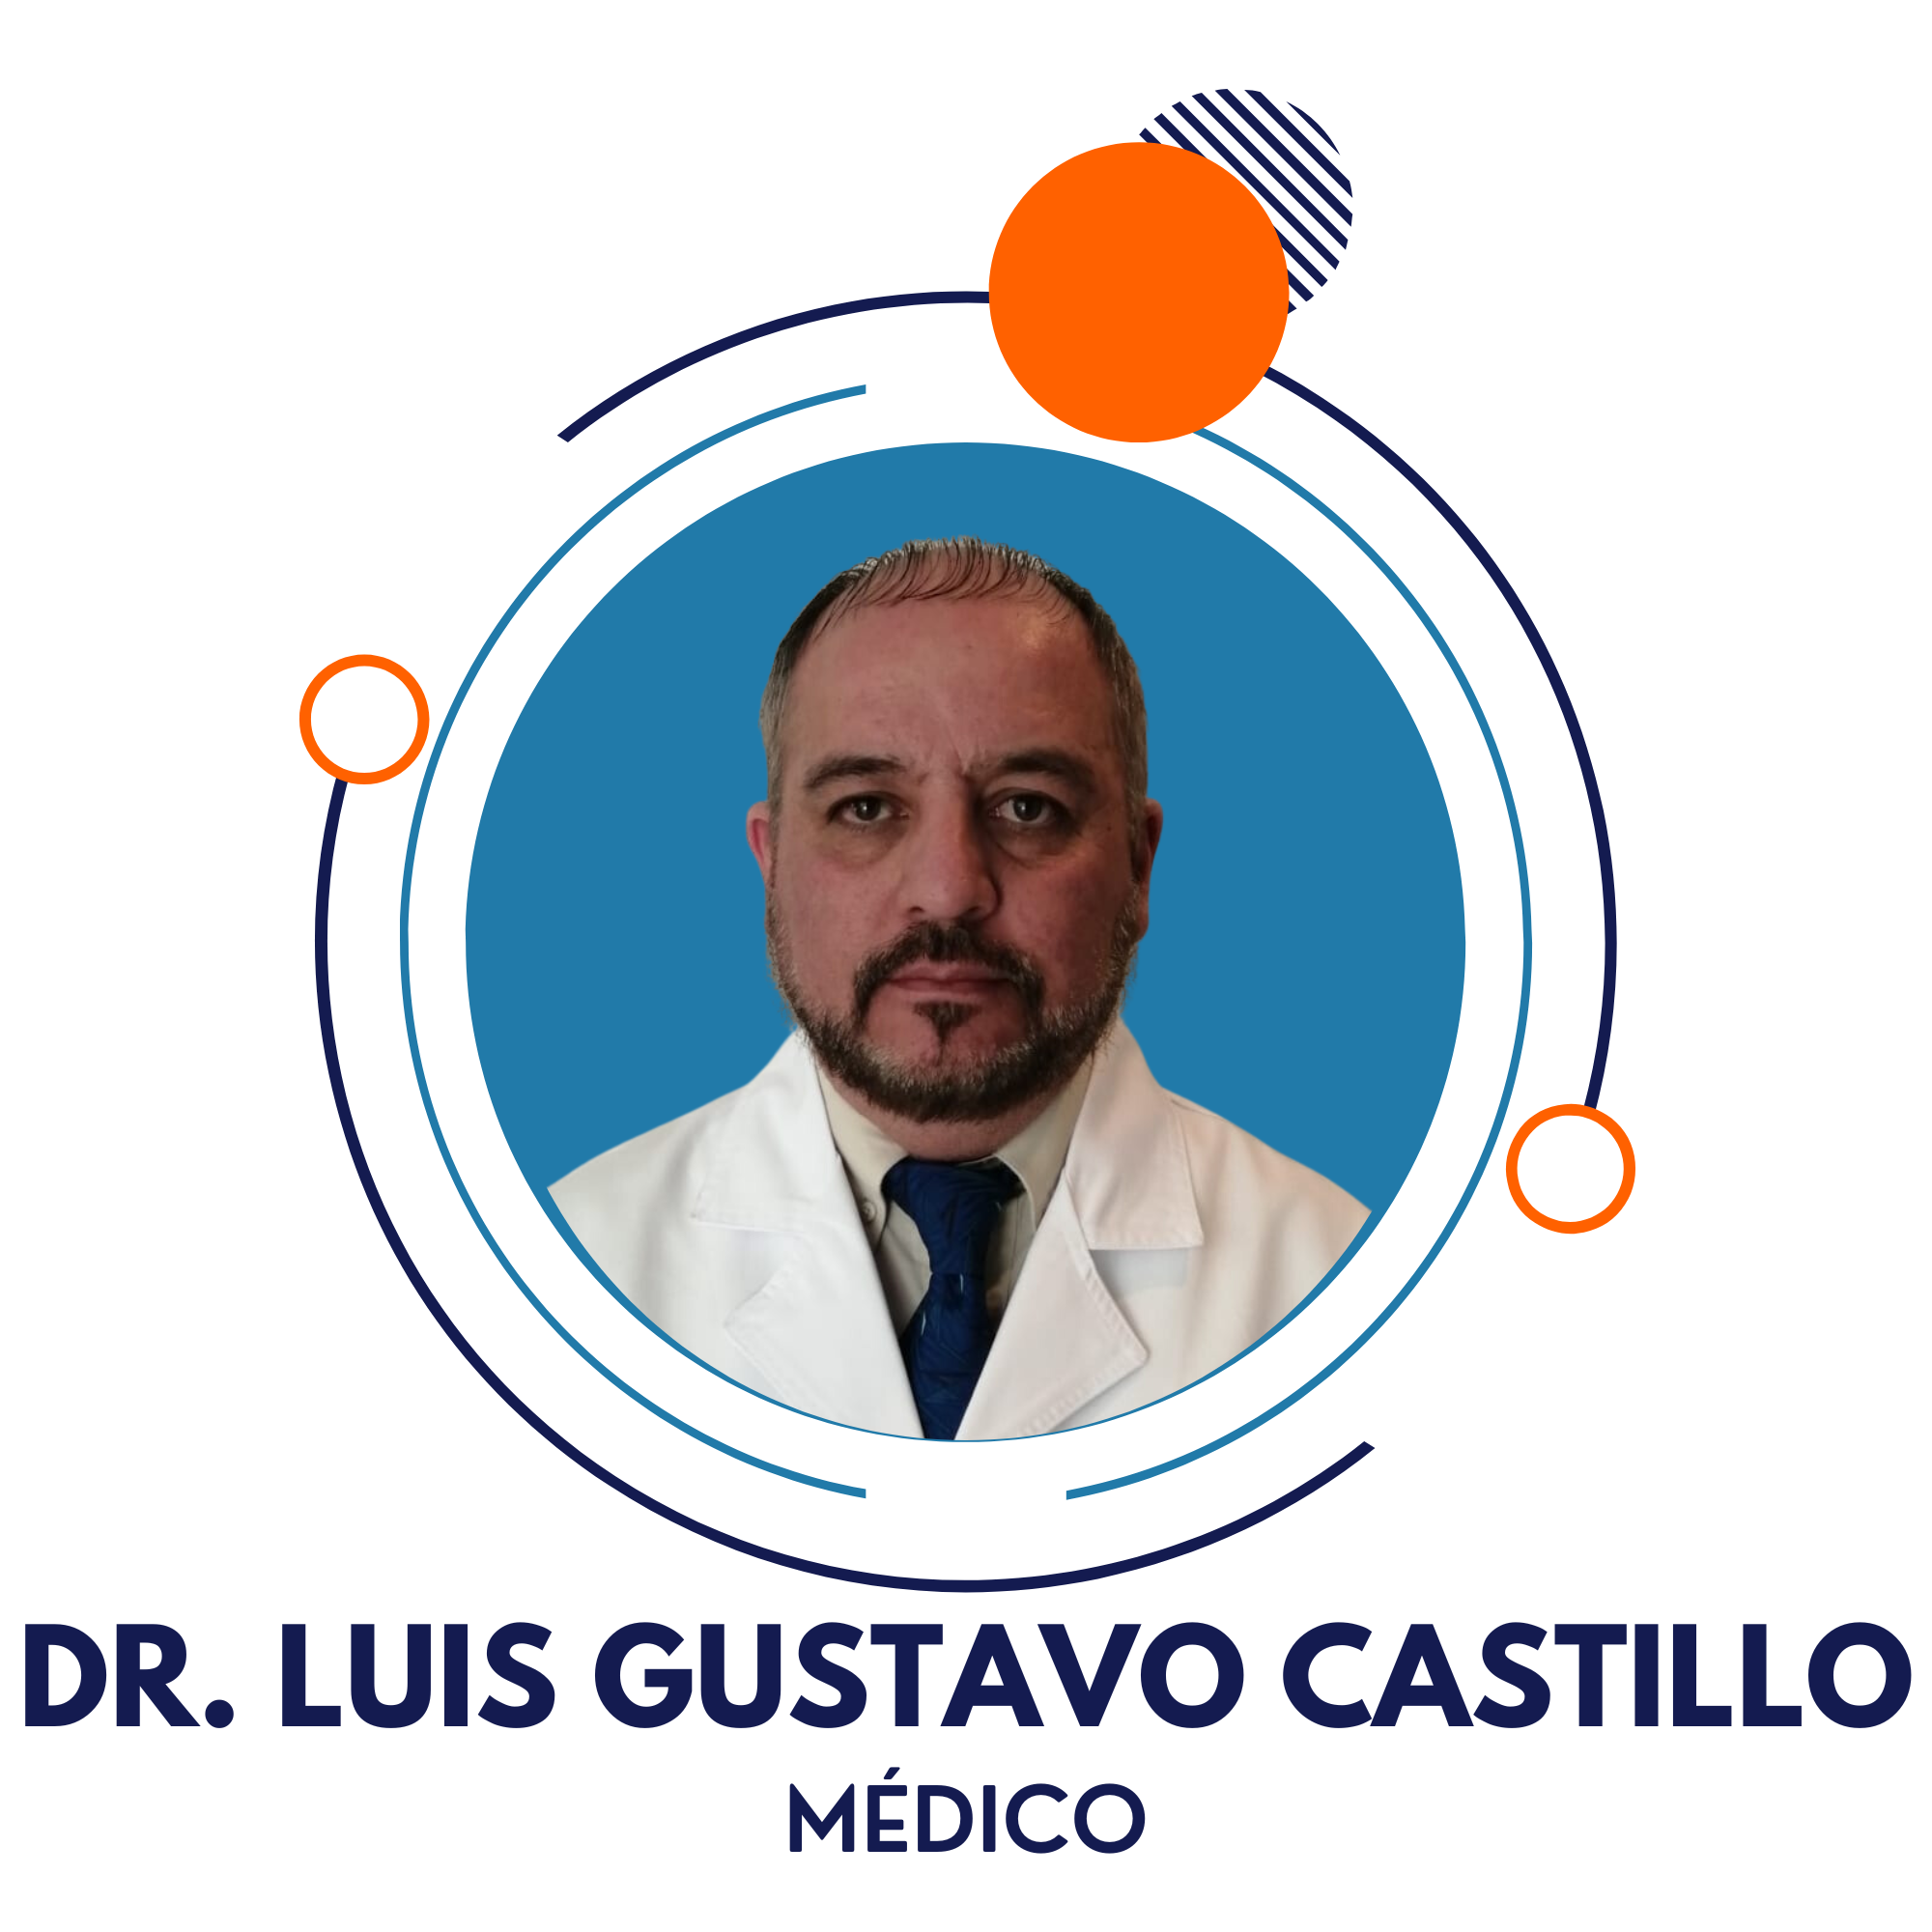 Dr. Luis Gostavo castillo